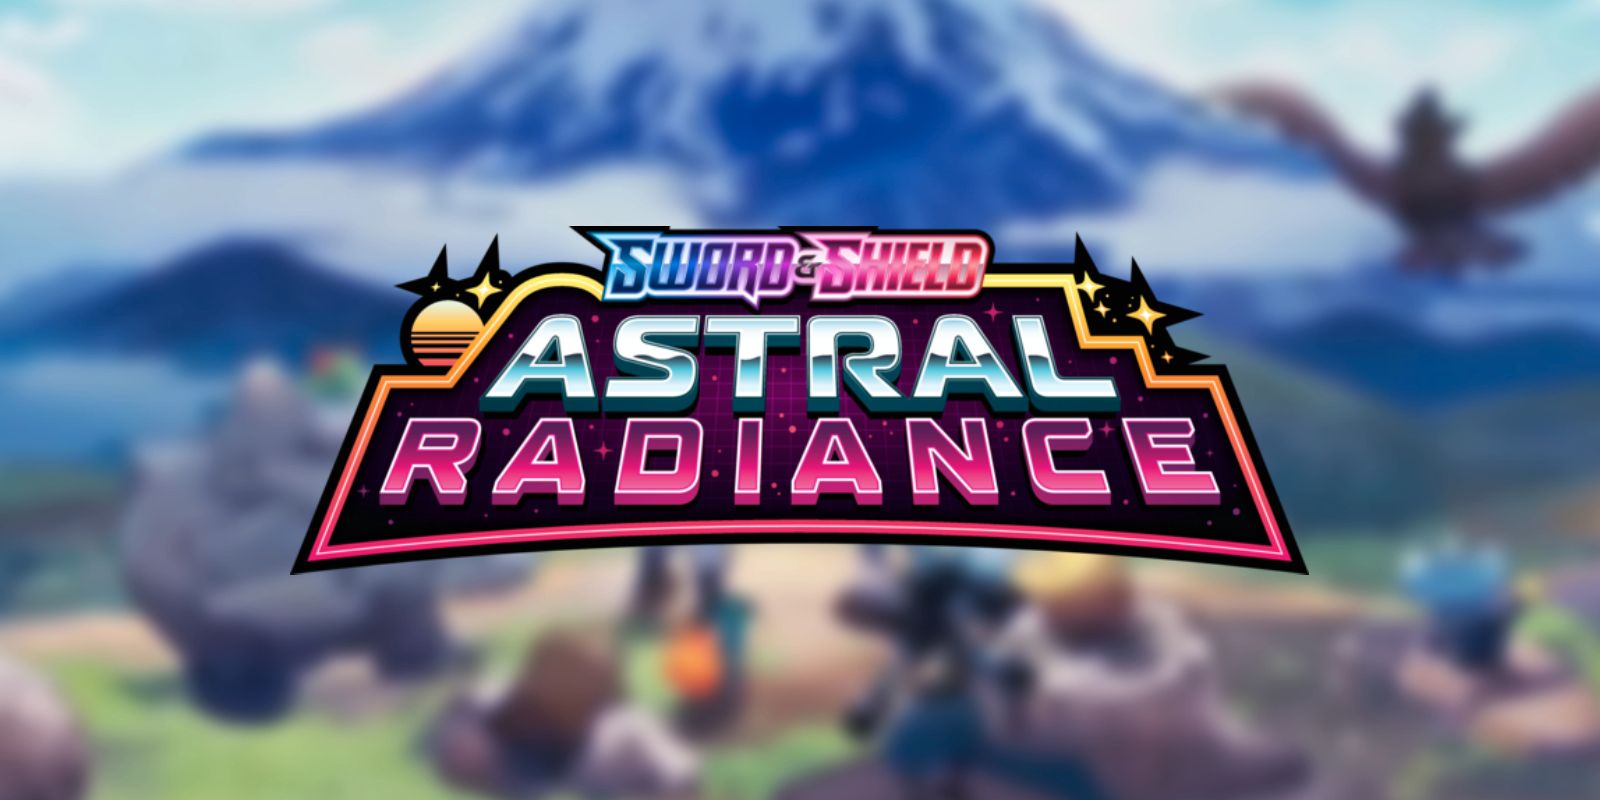 Qué es la fecha de lanzamiento de Pokémon TCG: Astral Radiance